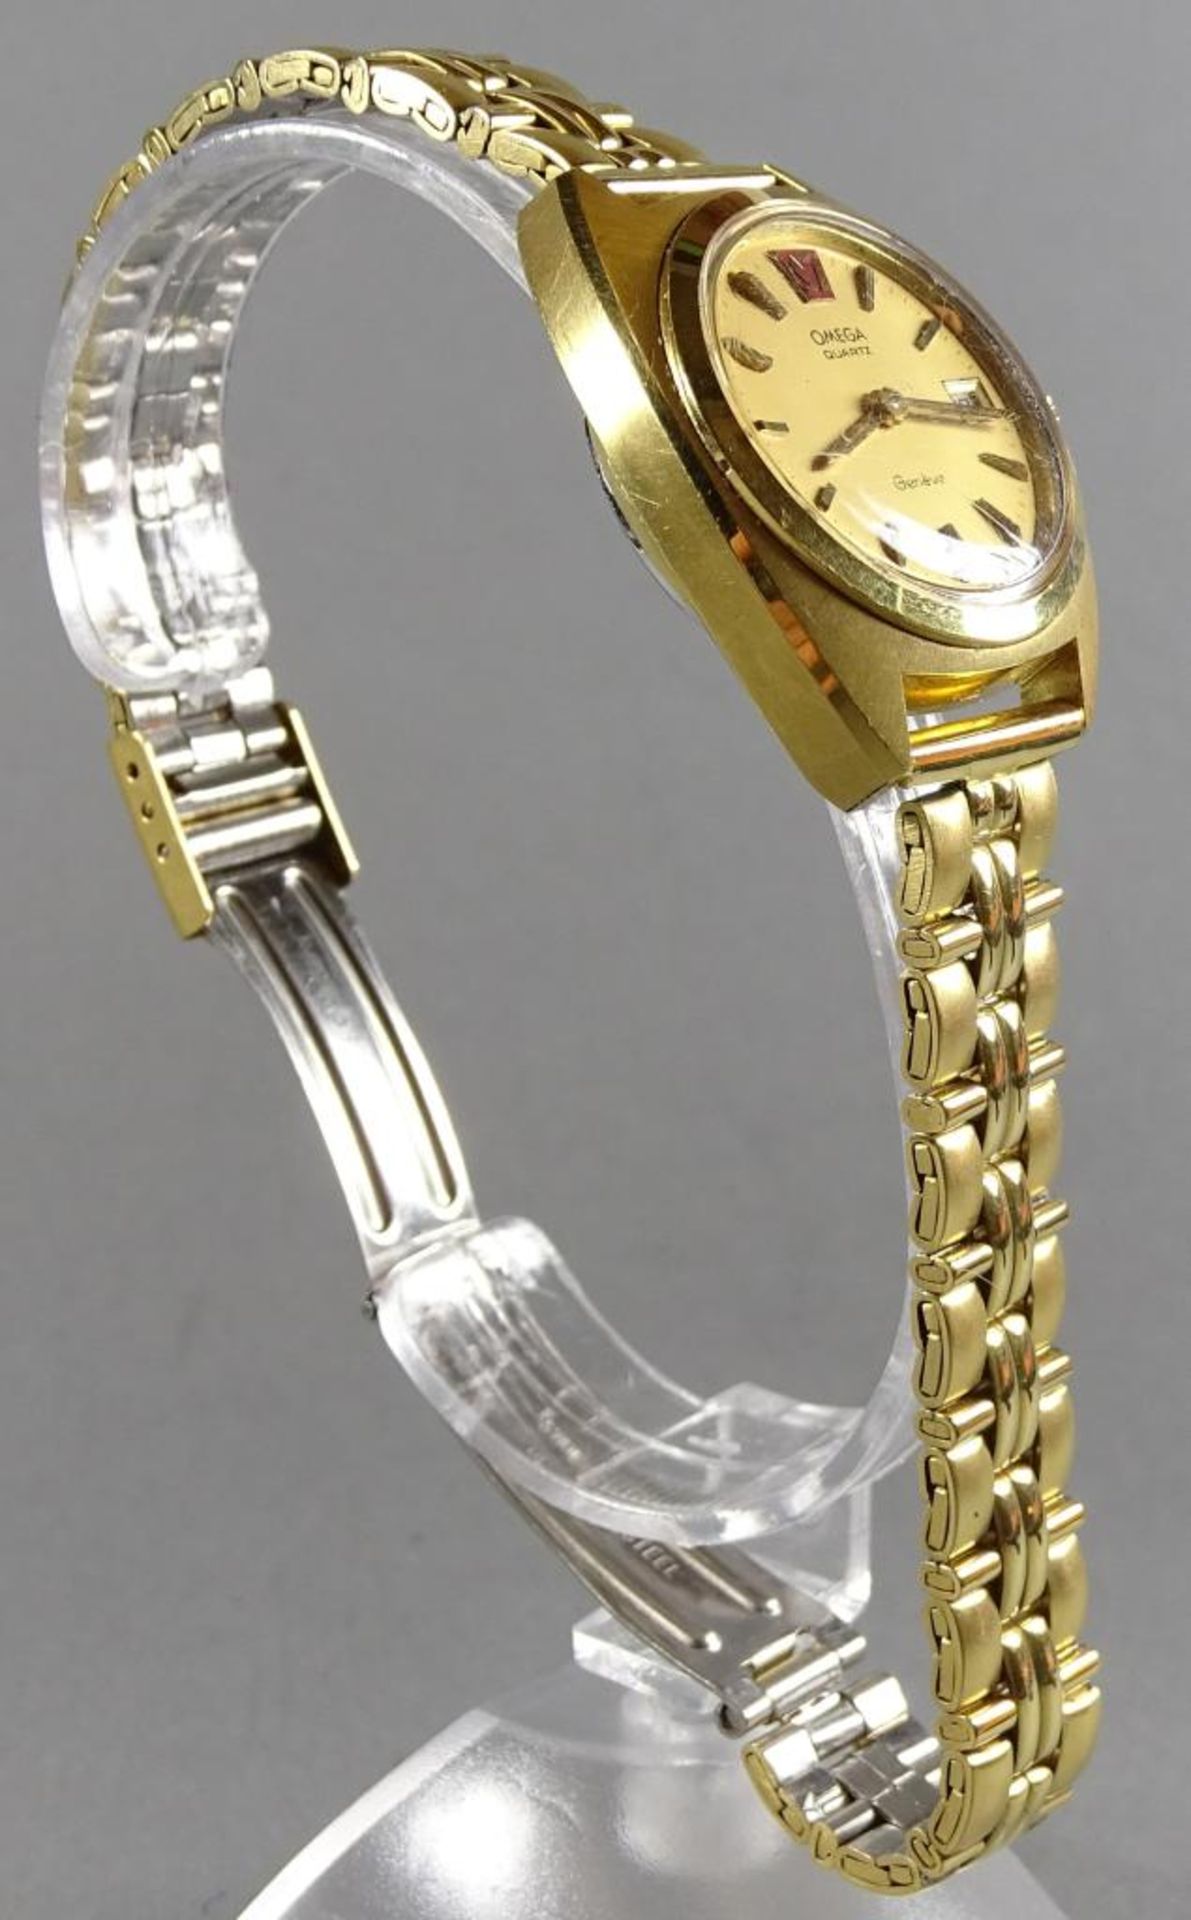 Damen Armbanduhr"Omega" Geneve,Quartz,Werk steht,Uhrzeiteinstellung nicht Funktionstüchtig, - Bild 3 aus 5